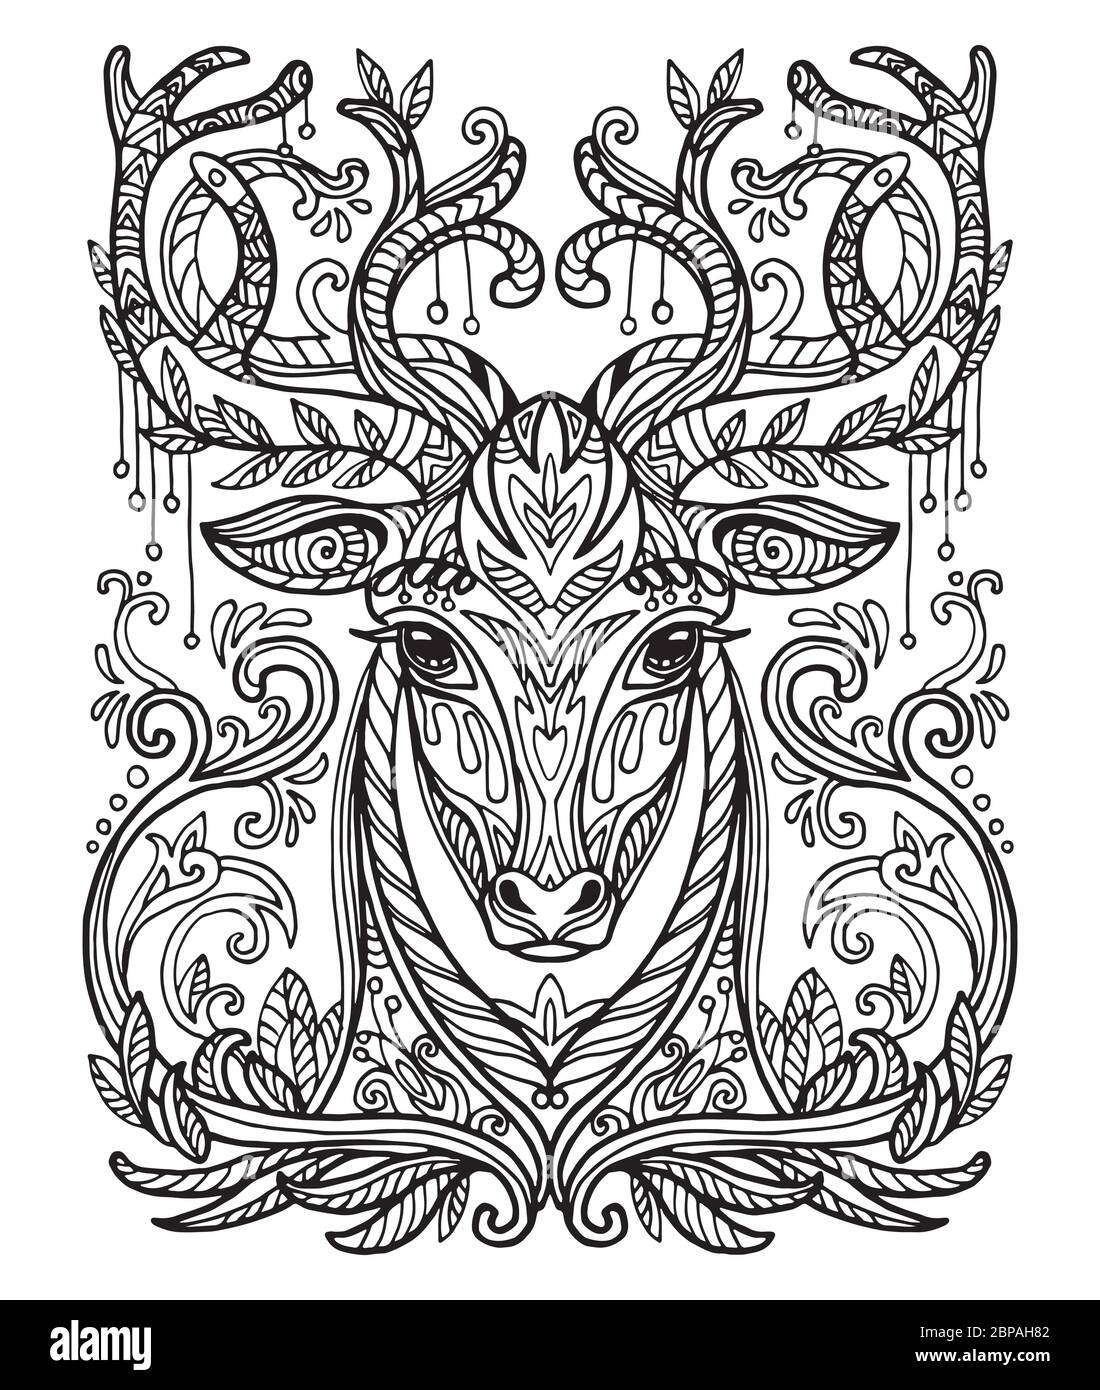 Vettore decorativo doodle testa ornamentale di cervo. Illustrazione vettoriale astratta del contorno nero del leone isolato su sfondo bianco. Illustrazione del magazzino Illustrazione Vettoriale